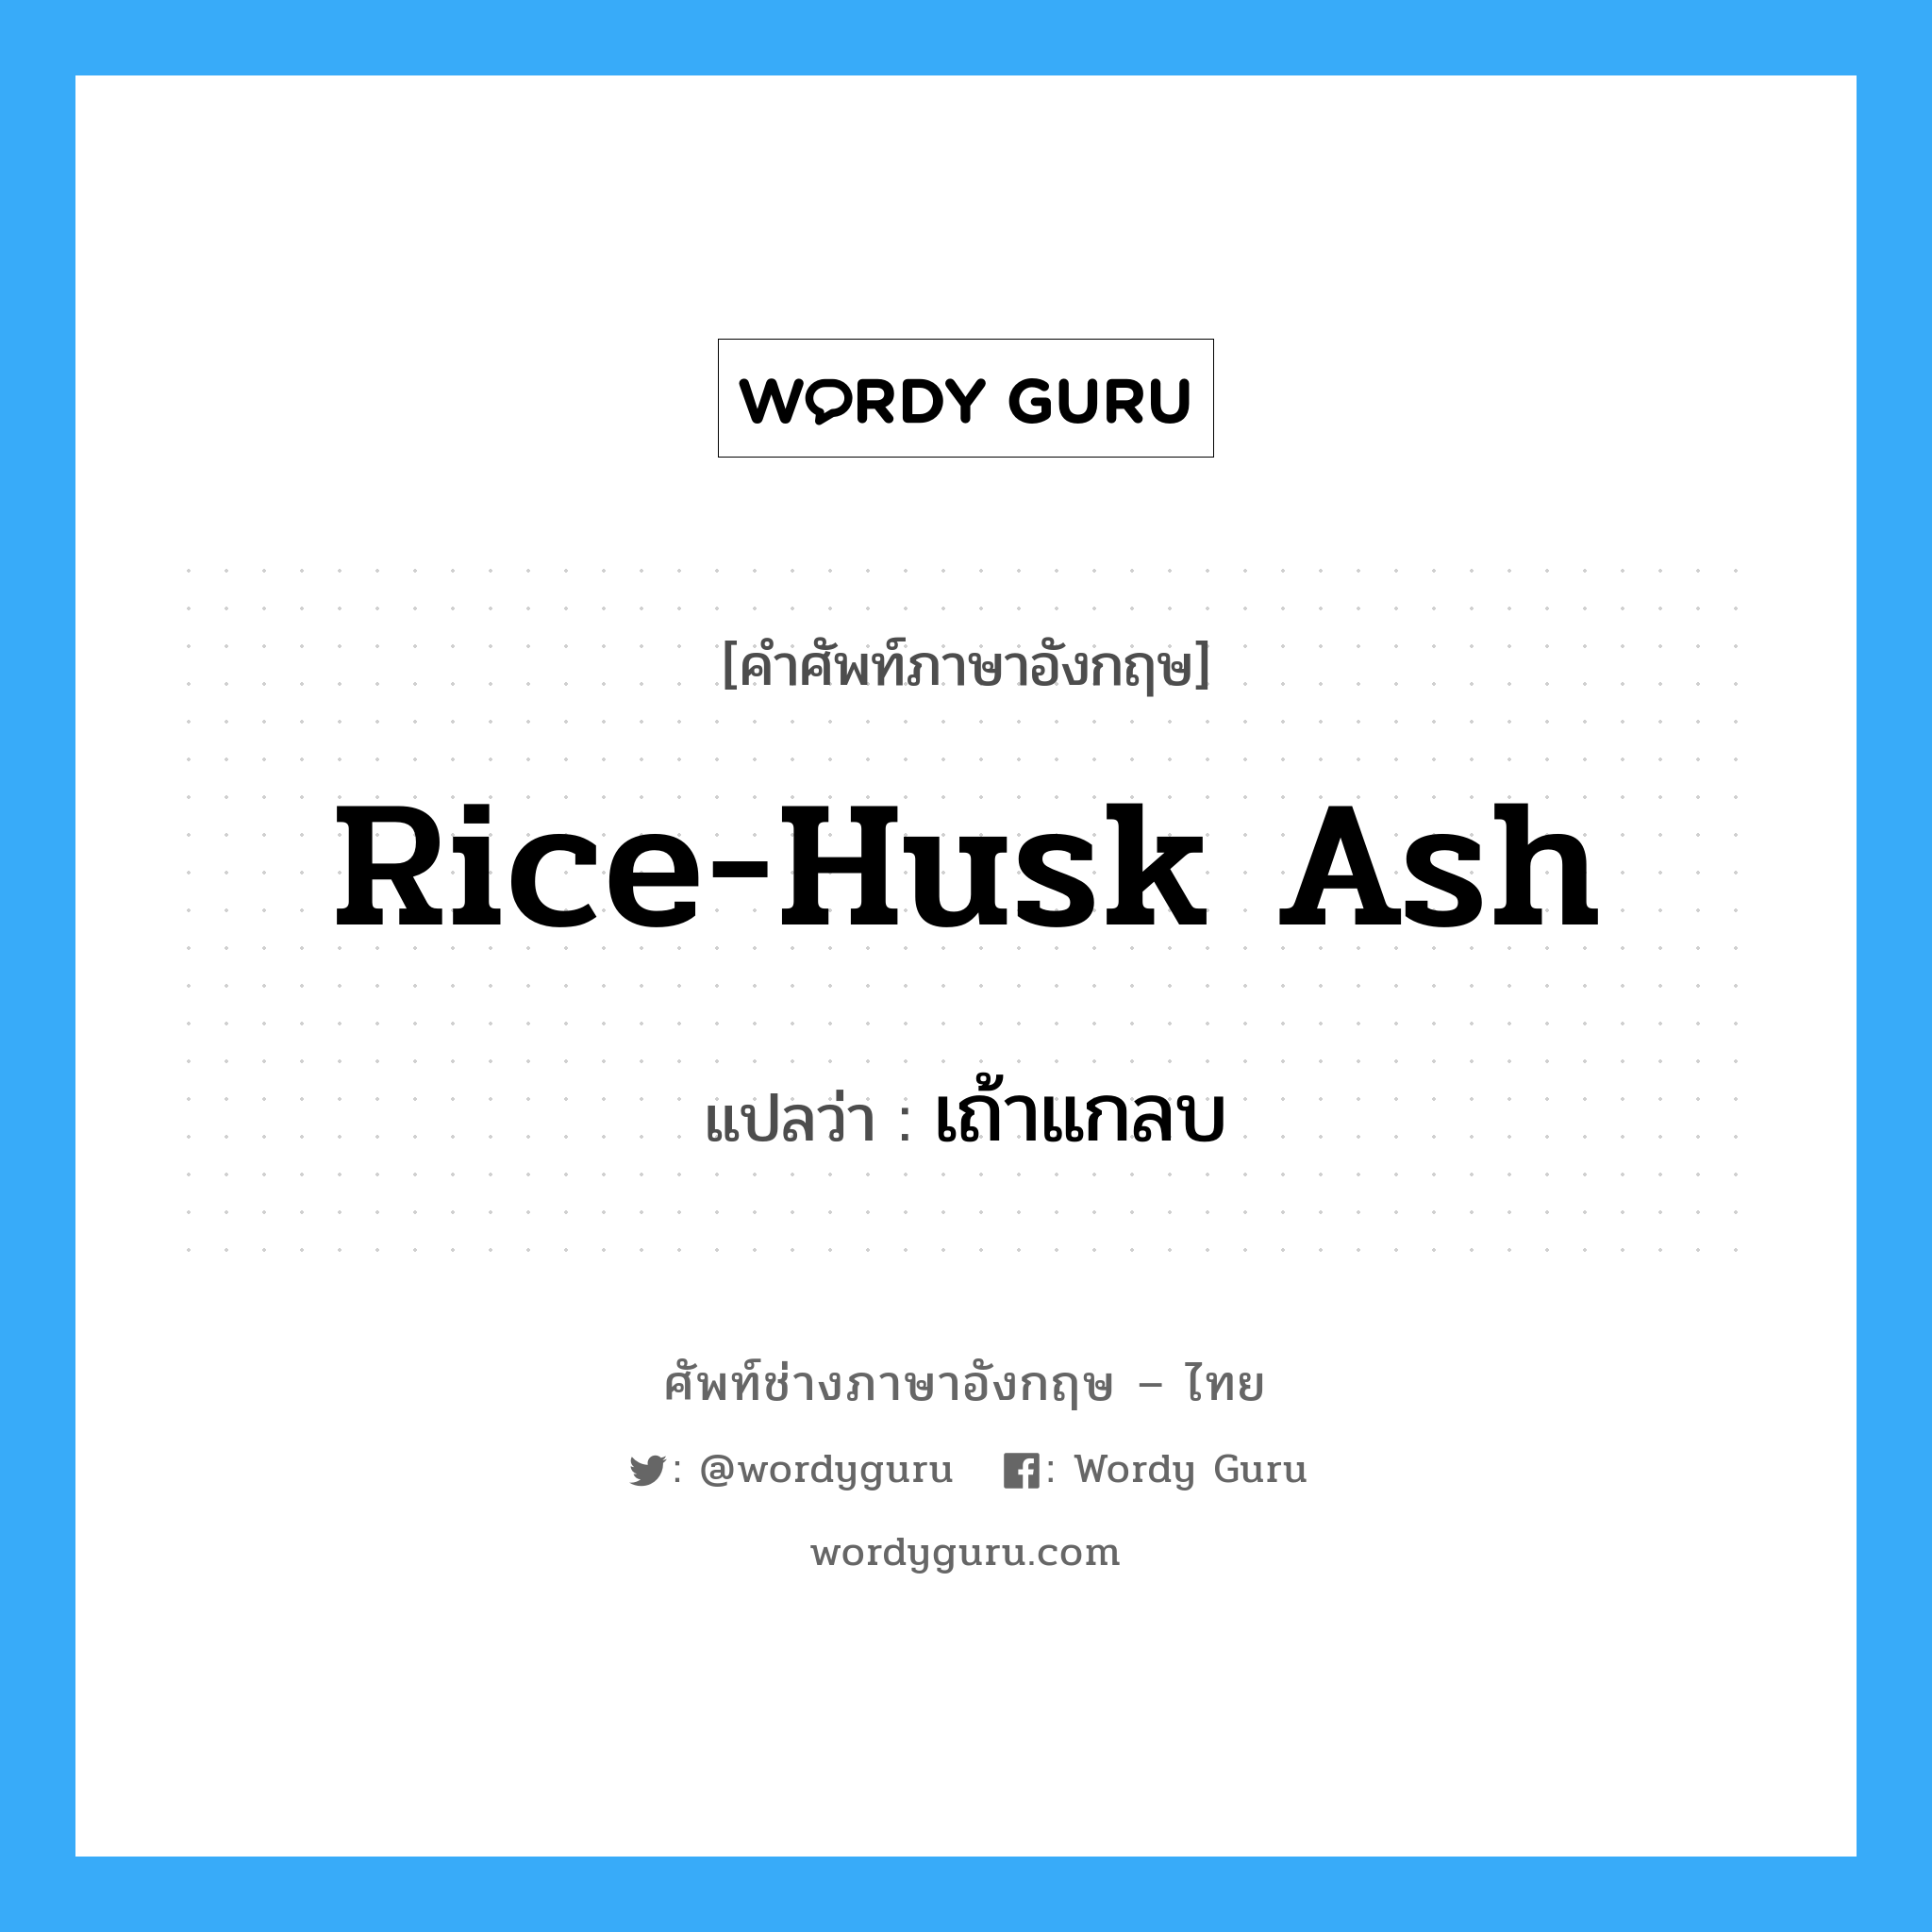 เถ้าแกลบ ภาษาอังกฤษ?, คำศัพท์ช่างภาษาอังกฤษ - ไทย เถ้าแกลบ คำศัพท์ภาษาอังกฤษ เถ้าแกลบ แปลว่า rice-husk ash